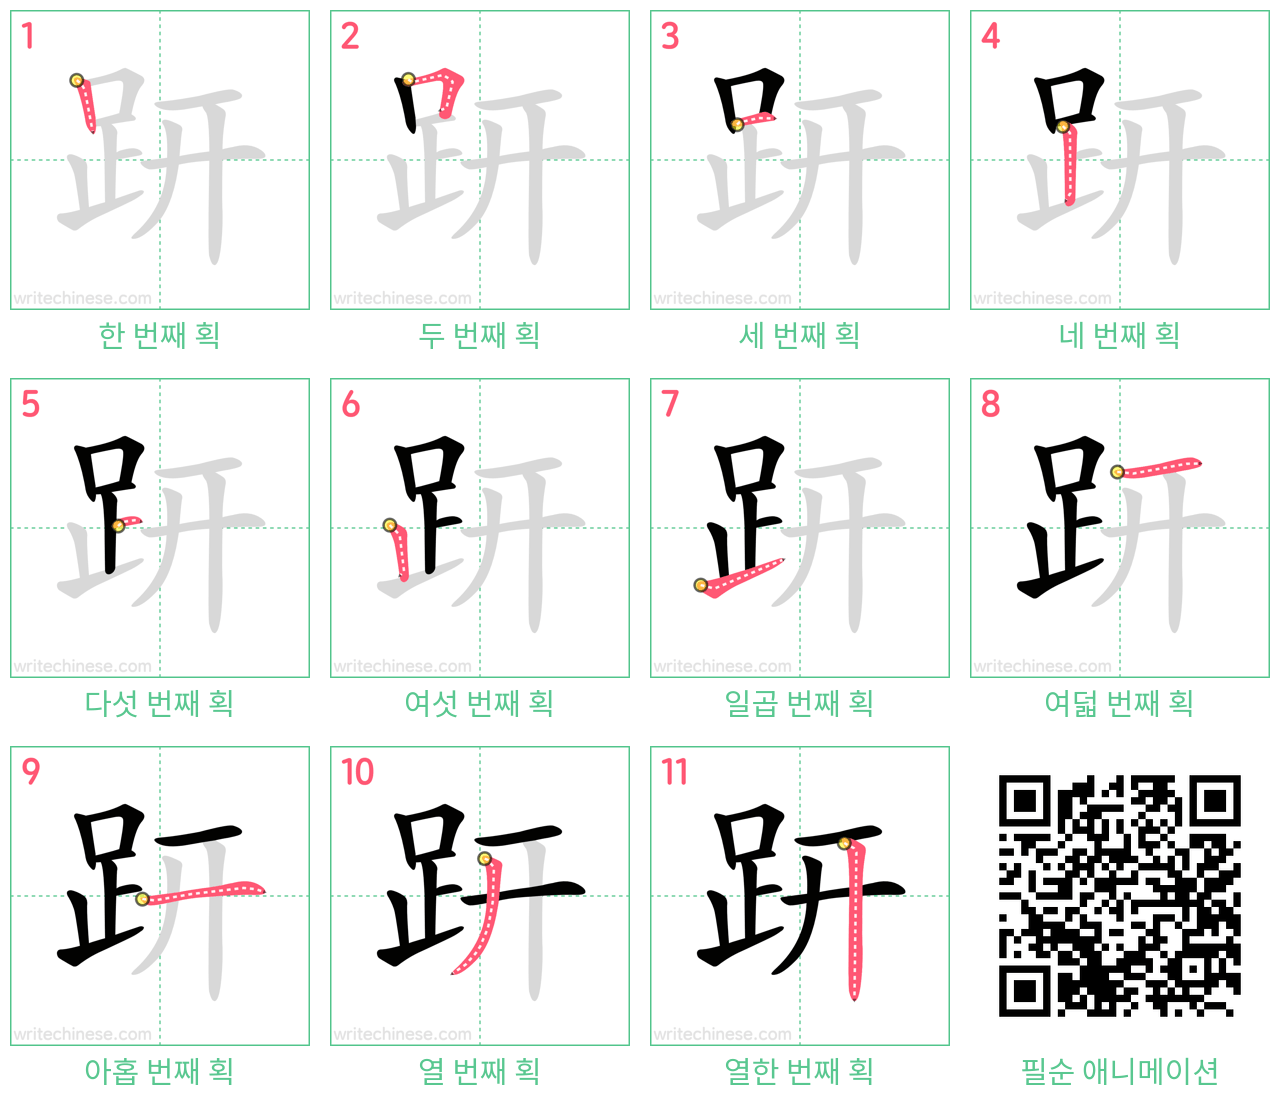 趼 step-by-step stroke order diagrams